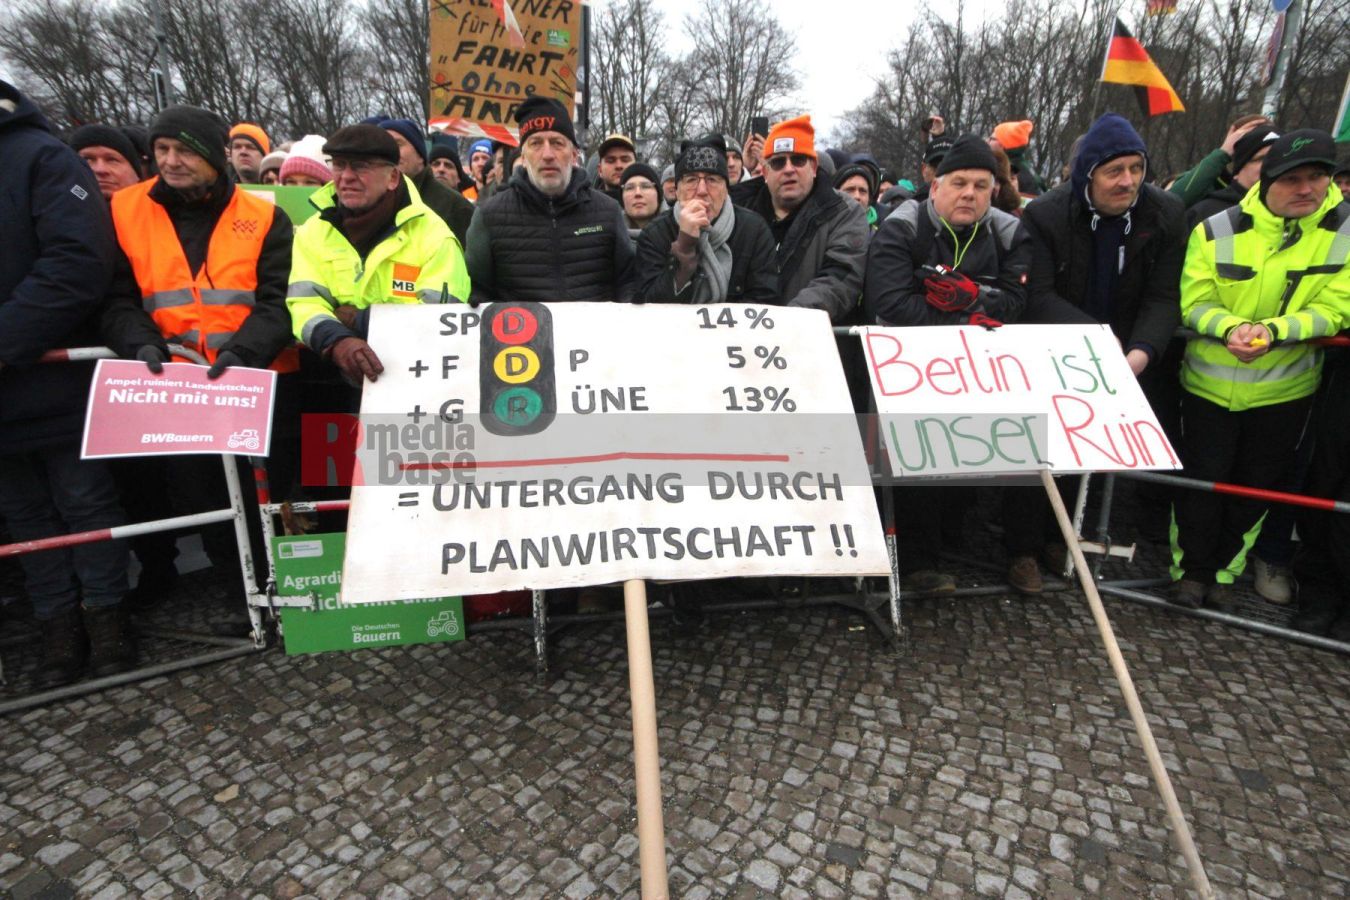 Bauernprotest in Berlin <i>Bild Denner/R-mediabase</i> <br><a href=/confor2/?bld=79002&pst=78995&aid=86&i1=Denner/R-mediabase>Download Bild 79002</a>  <br><a href=/?p=78995>Zum Beitrag 78995</a>